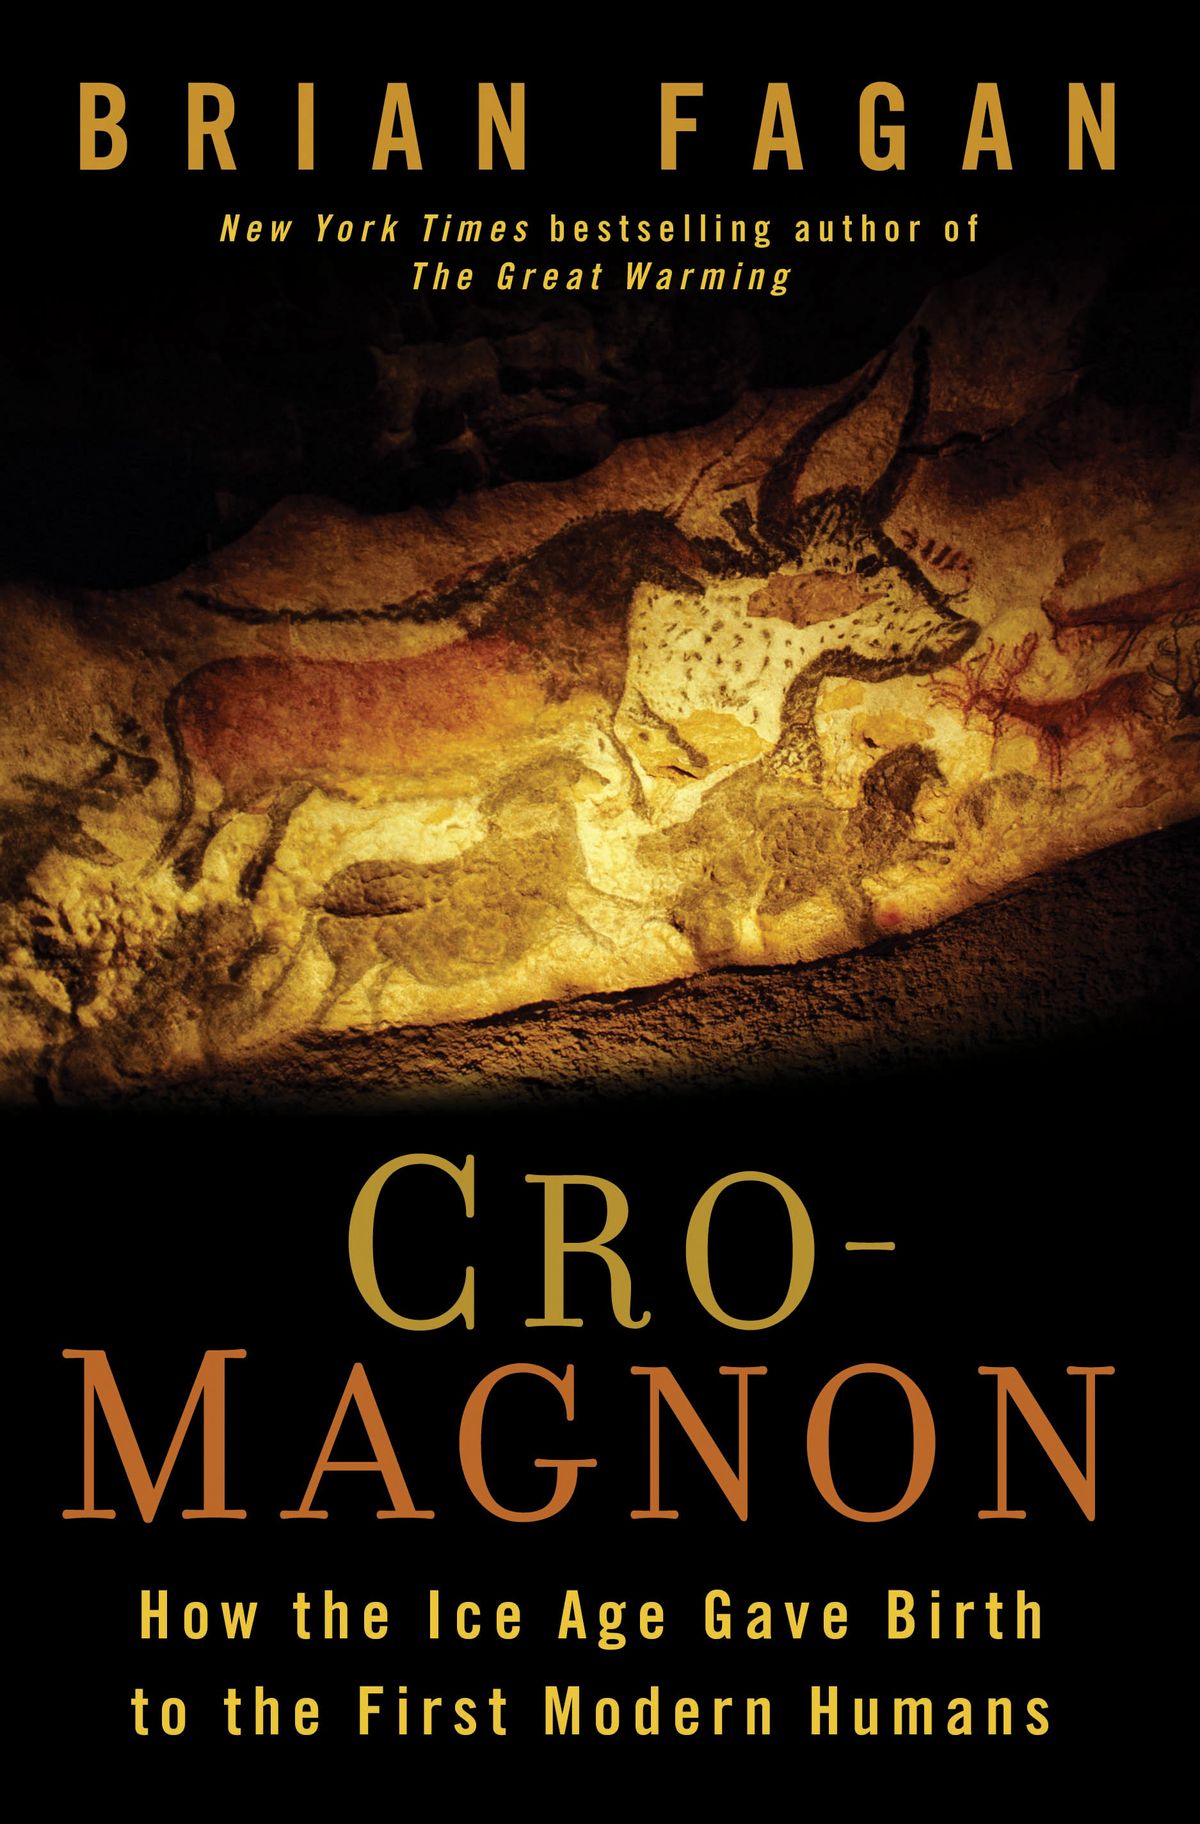 "Cro-Magnon," by Brian Fagan